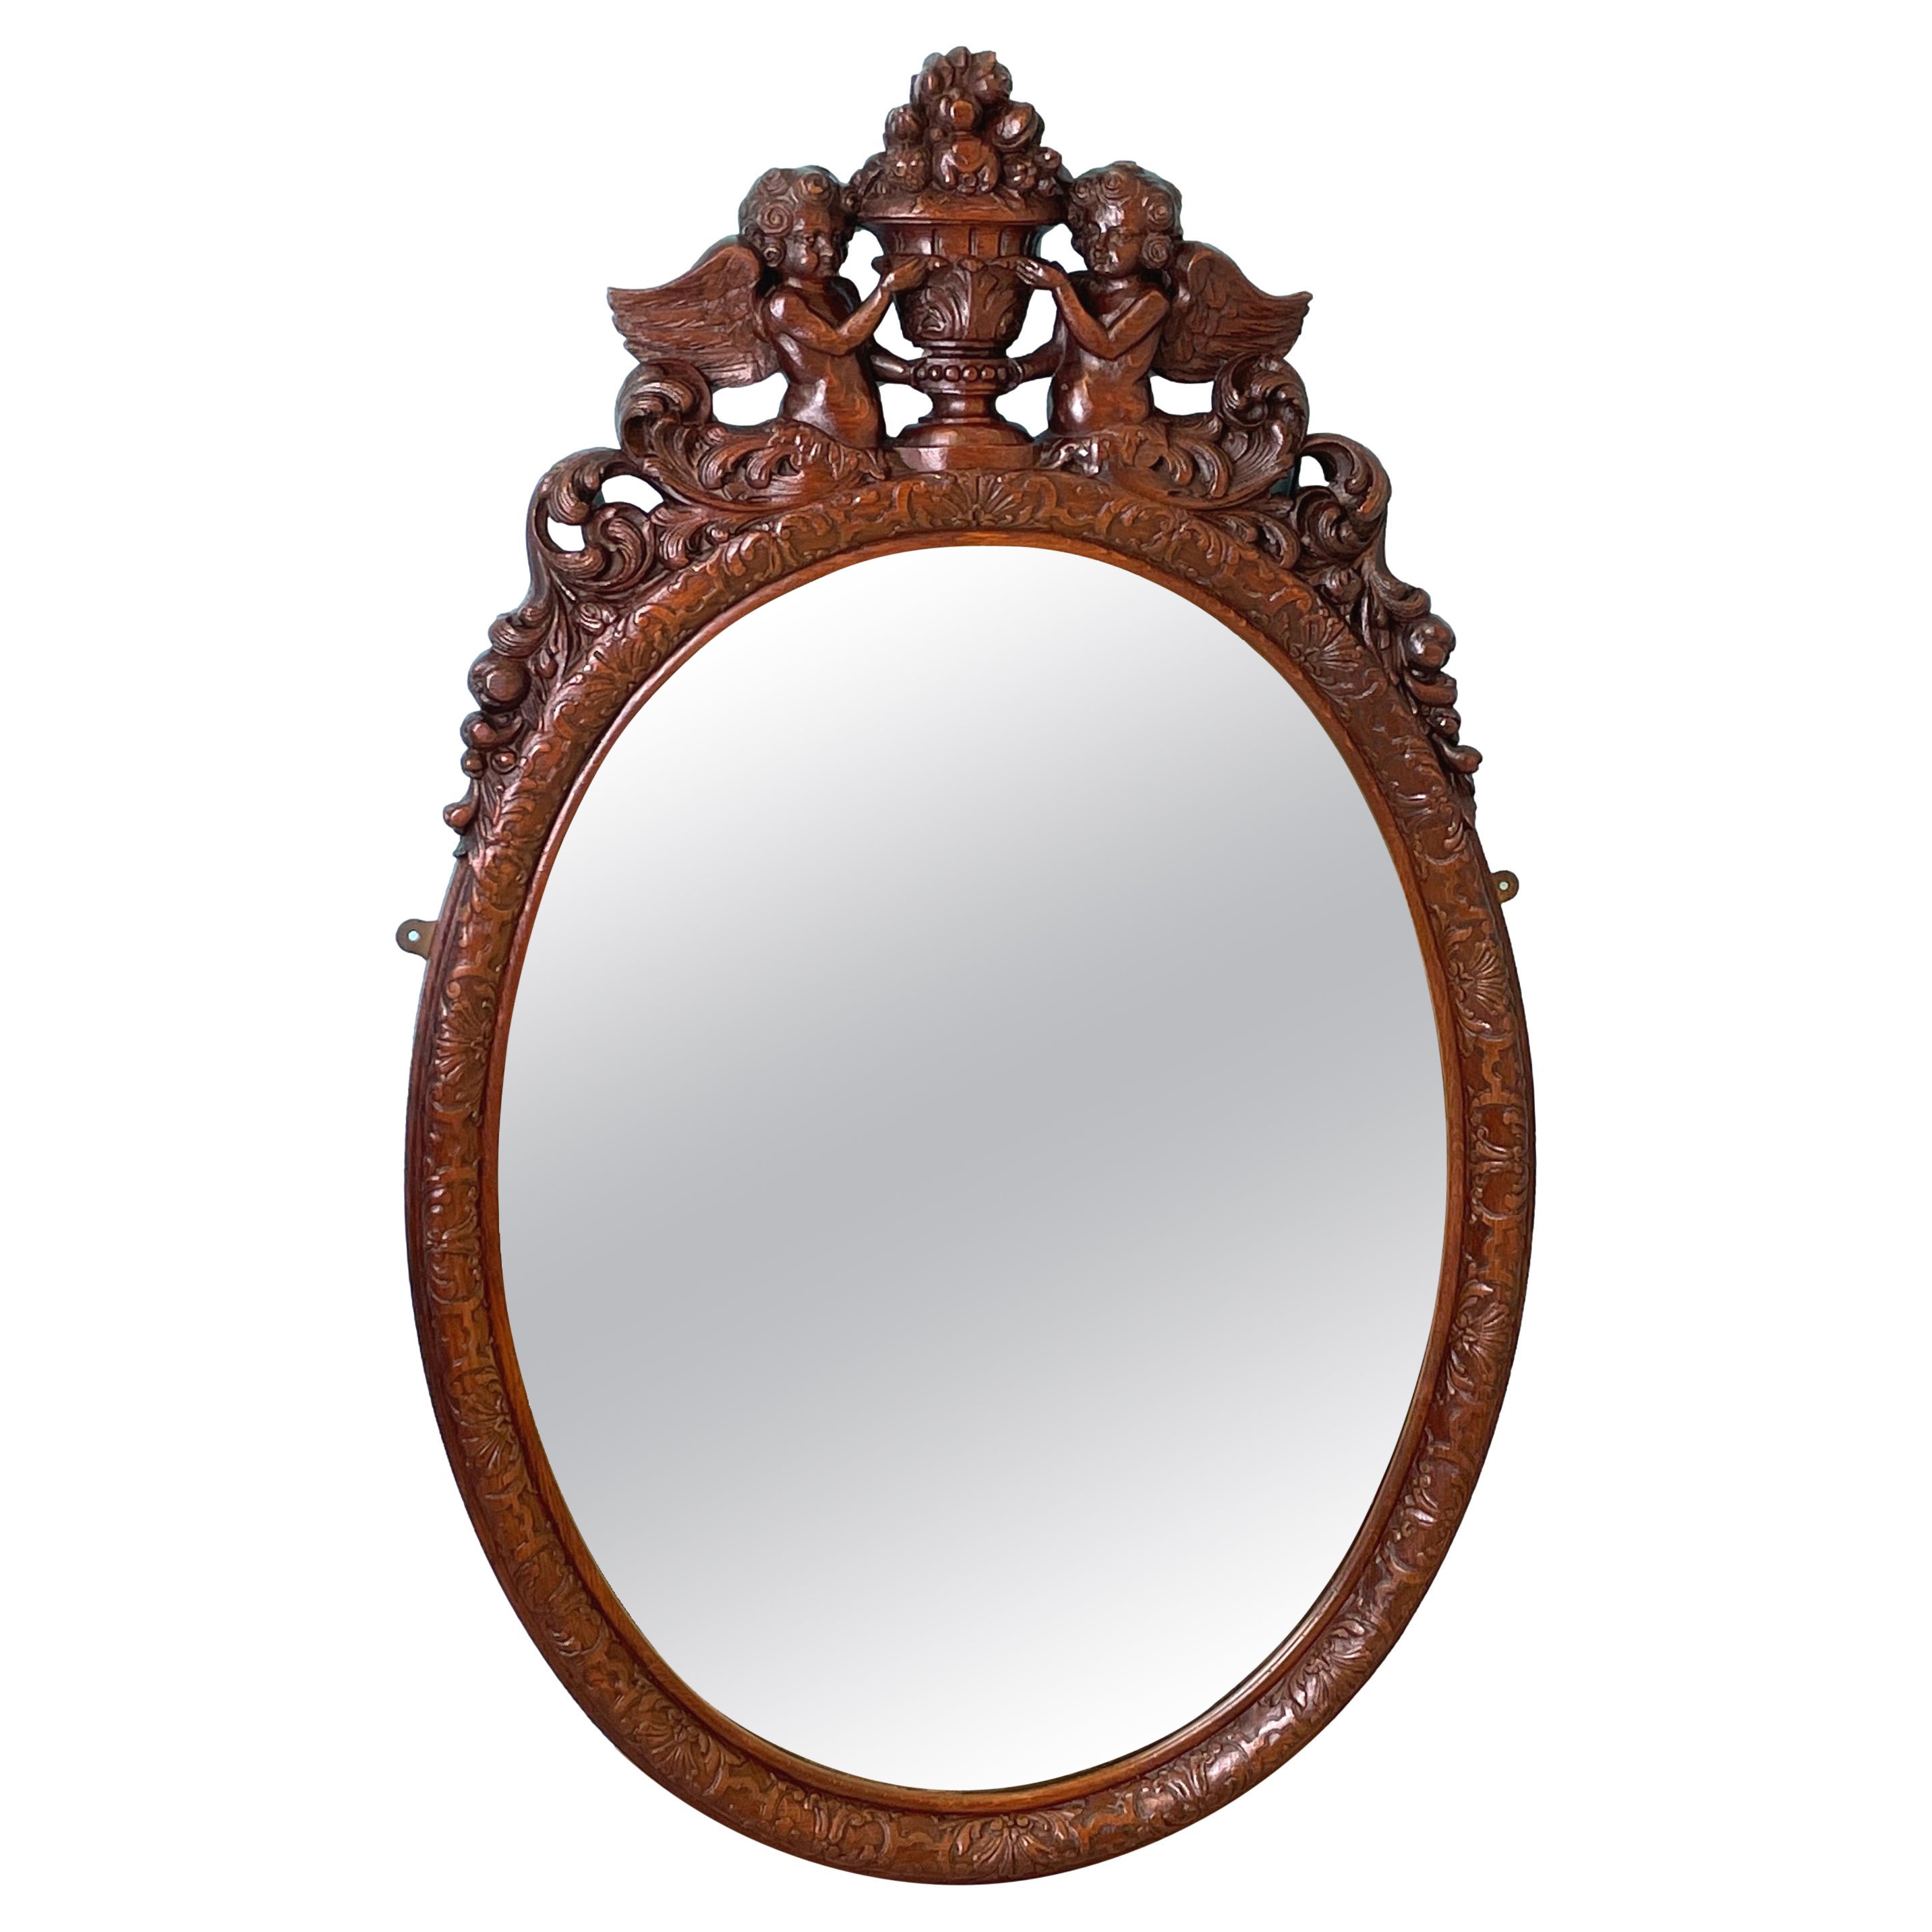 Carolean Style Oval Oak Wall Mirror For Sale